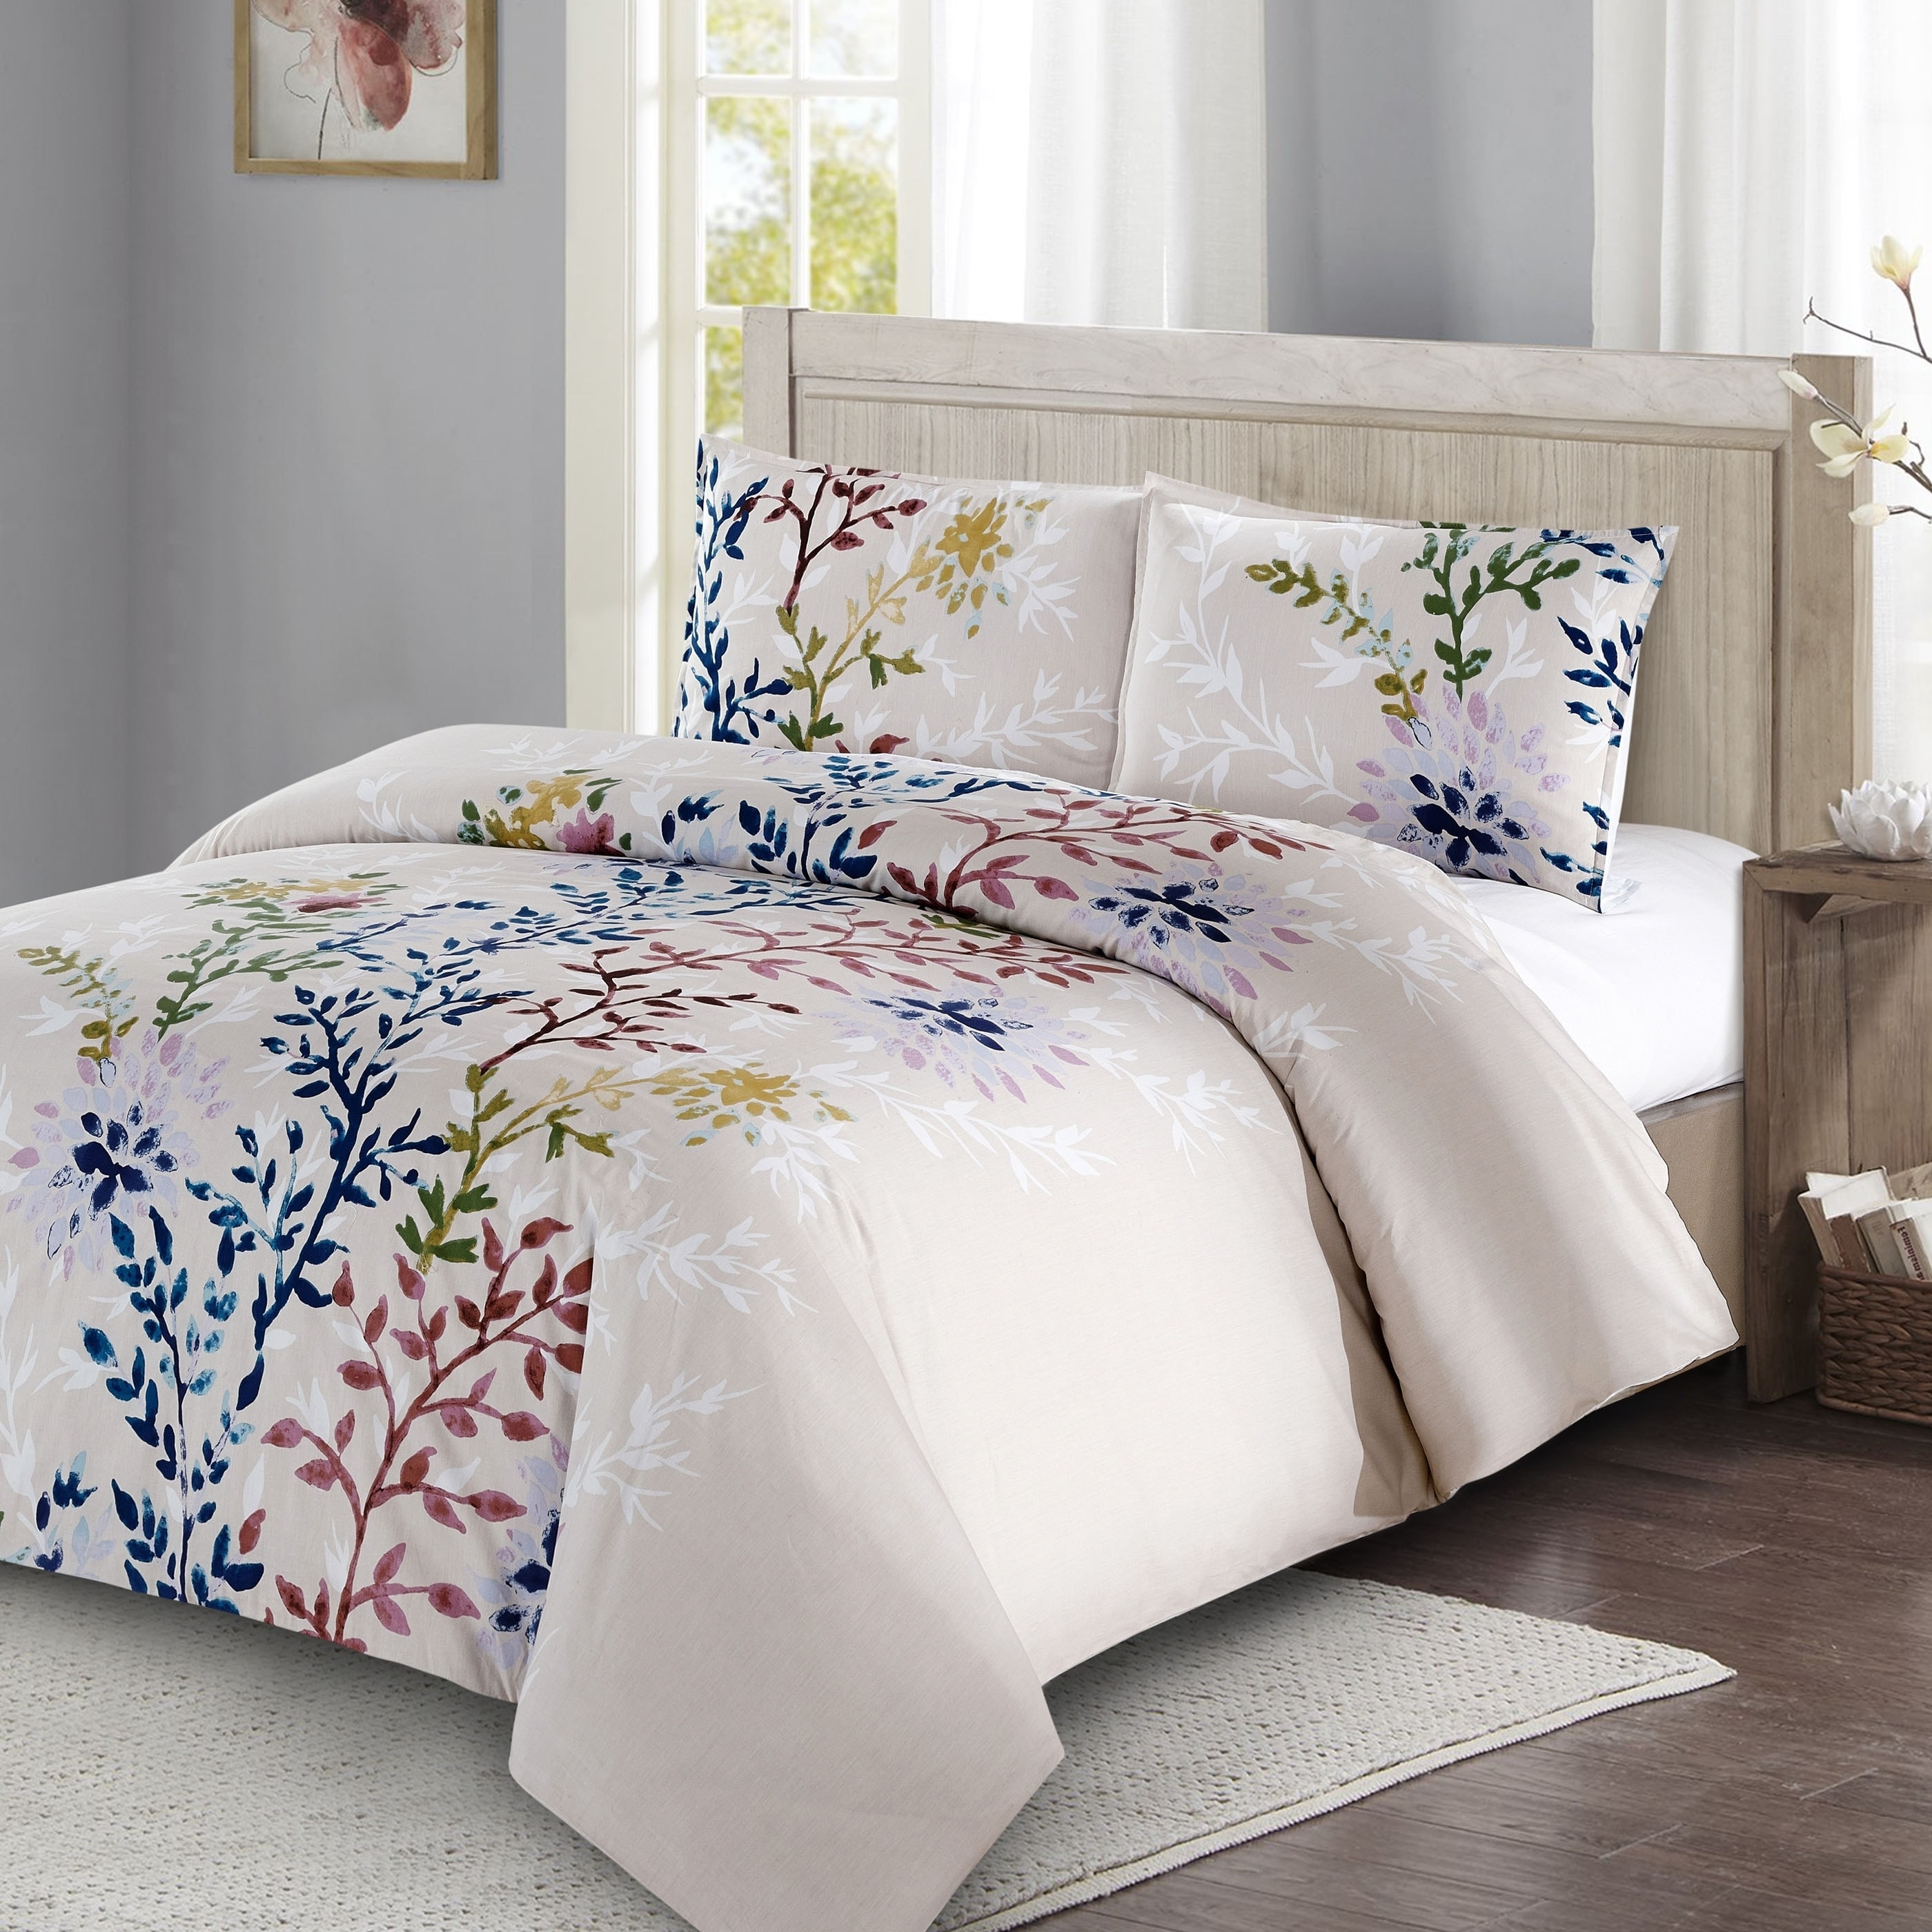 Reversible Quilt Luxury Dahlia Coverlet set Wrinkle Free Printed Bedspread 